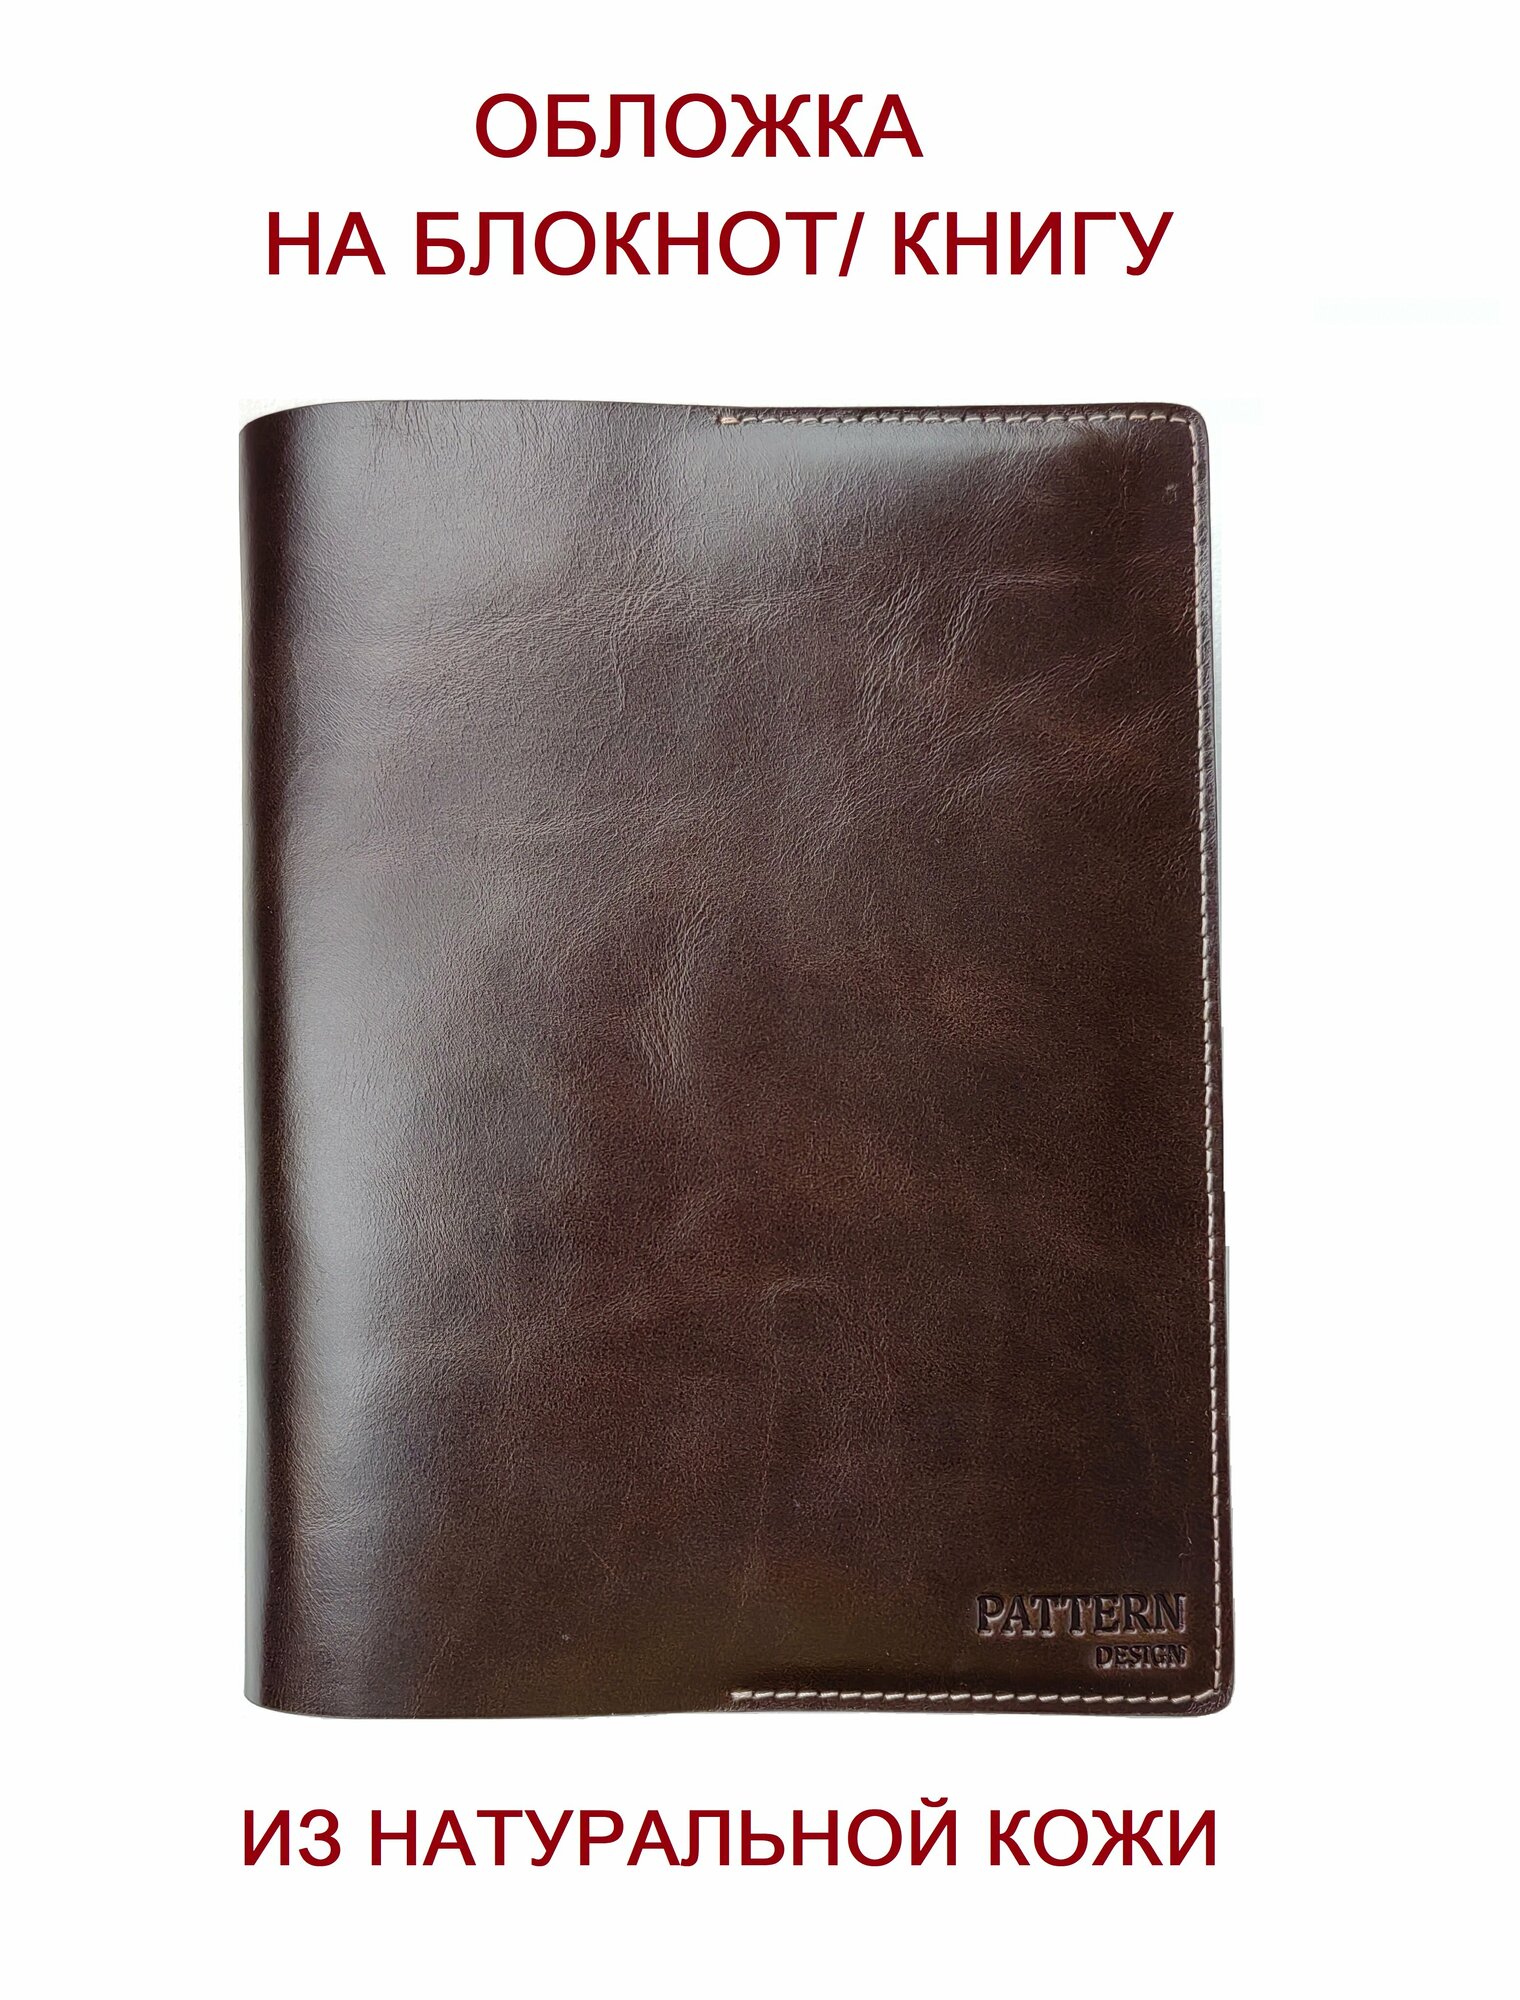 Обложка Pattern для книг и ежедневников из натуральной кожи, шоколадный цвет, формат А5, арт.046